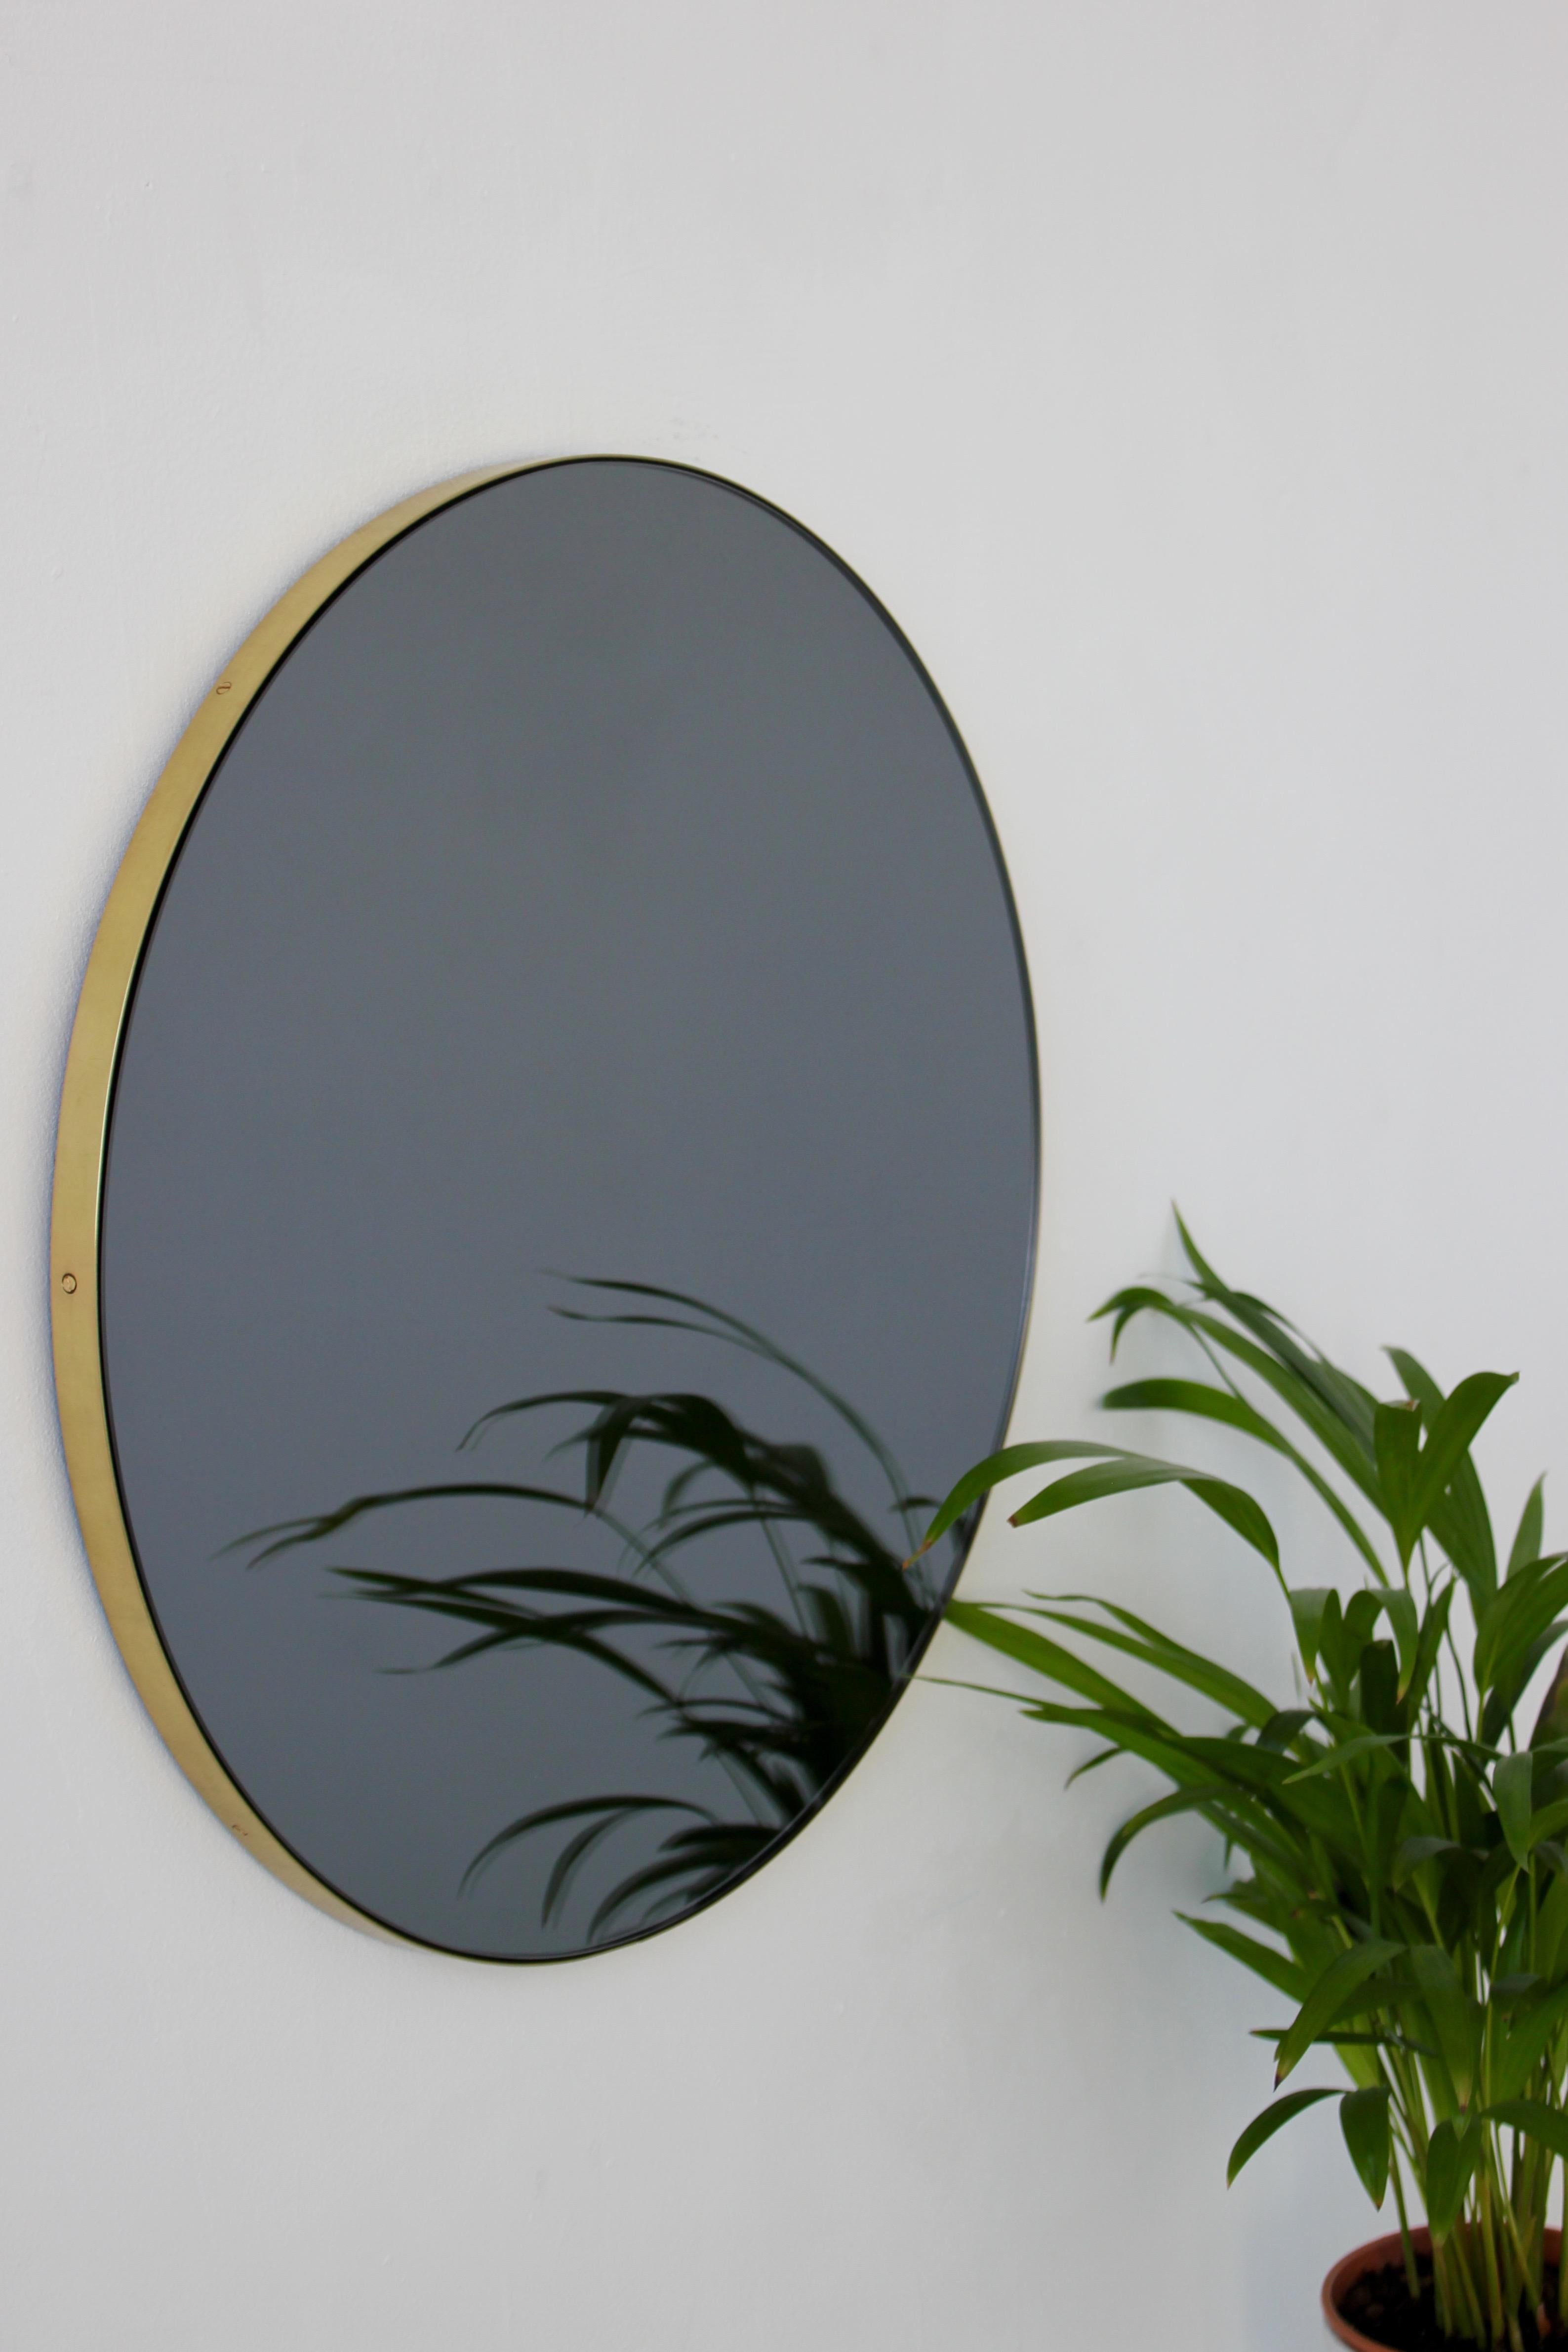 Miroir rond Orbis™ minimaliste teinté de noir avec un élégant cadre en laiton brossé. Les détails et la finition, notamment les vis apparentes en laiton, soulignent le caractère artisanal et la qualité du miroir, véritable signature de notre marque.